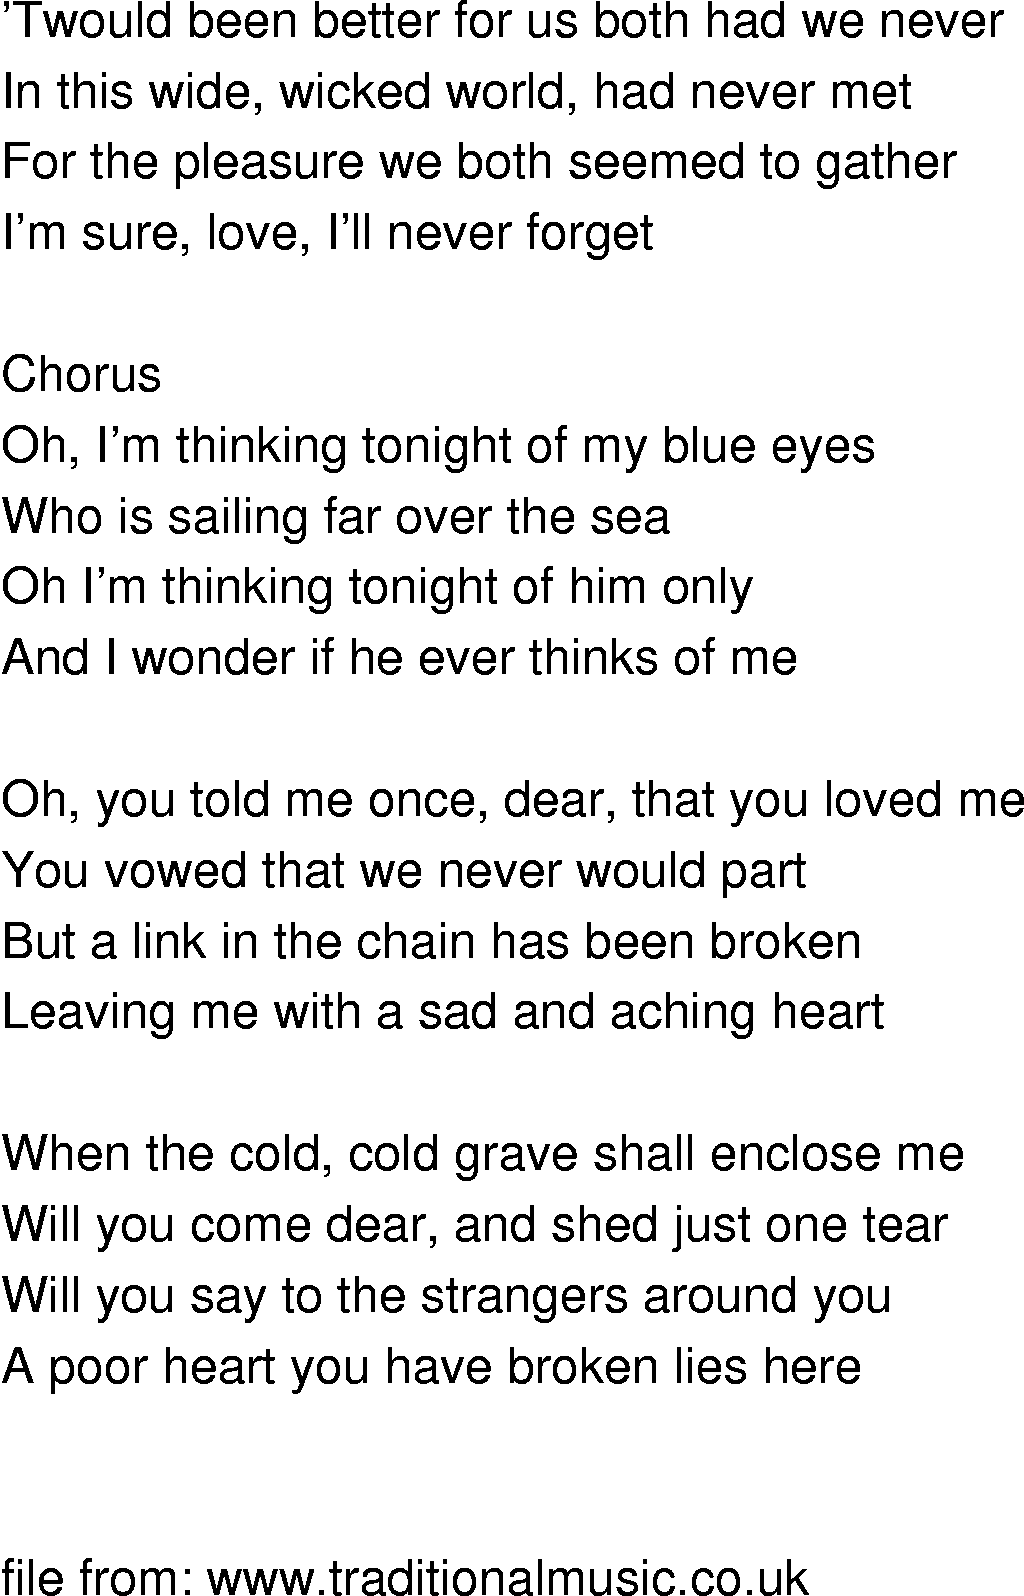 Old-Time (oldtimey) Song Lyrics - im thinking tonight of my blue eyes